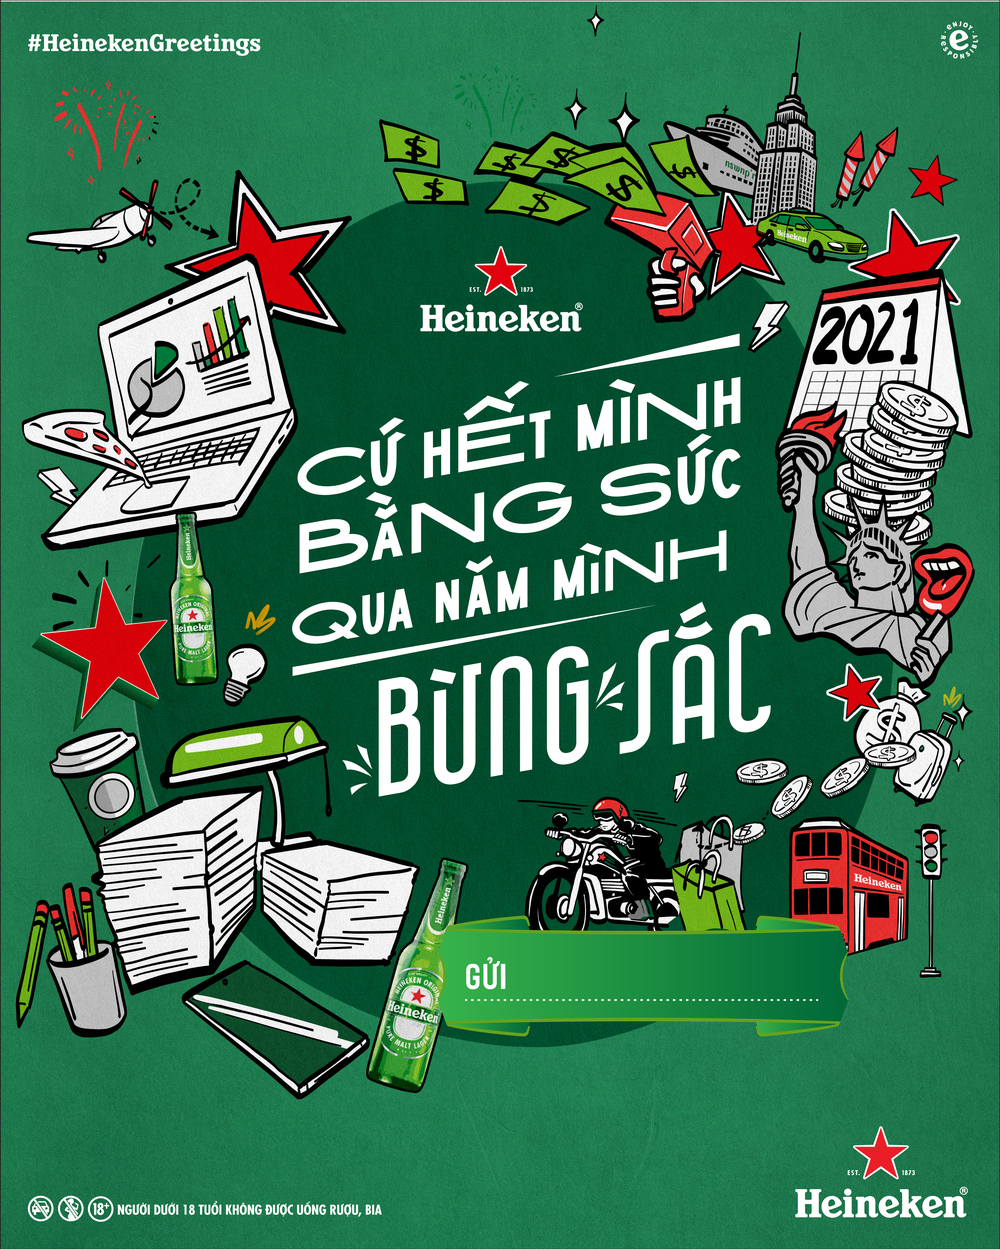 Dân mạng hào hứng “bắt trend” chúc mừng năm mới của Heineken - ảnh 3